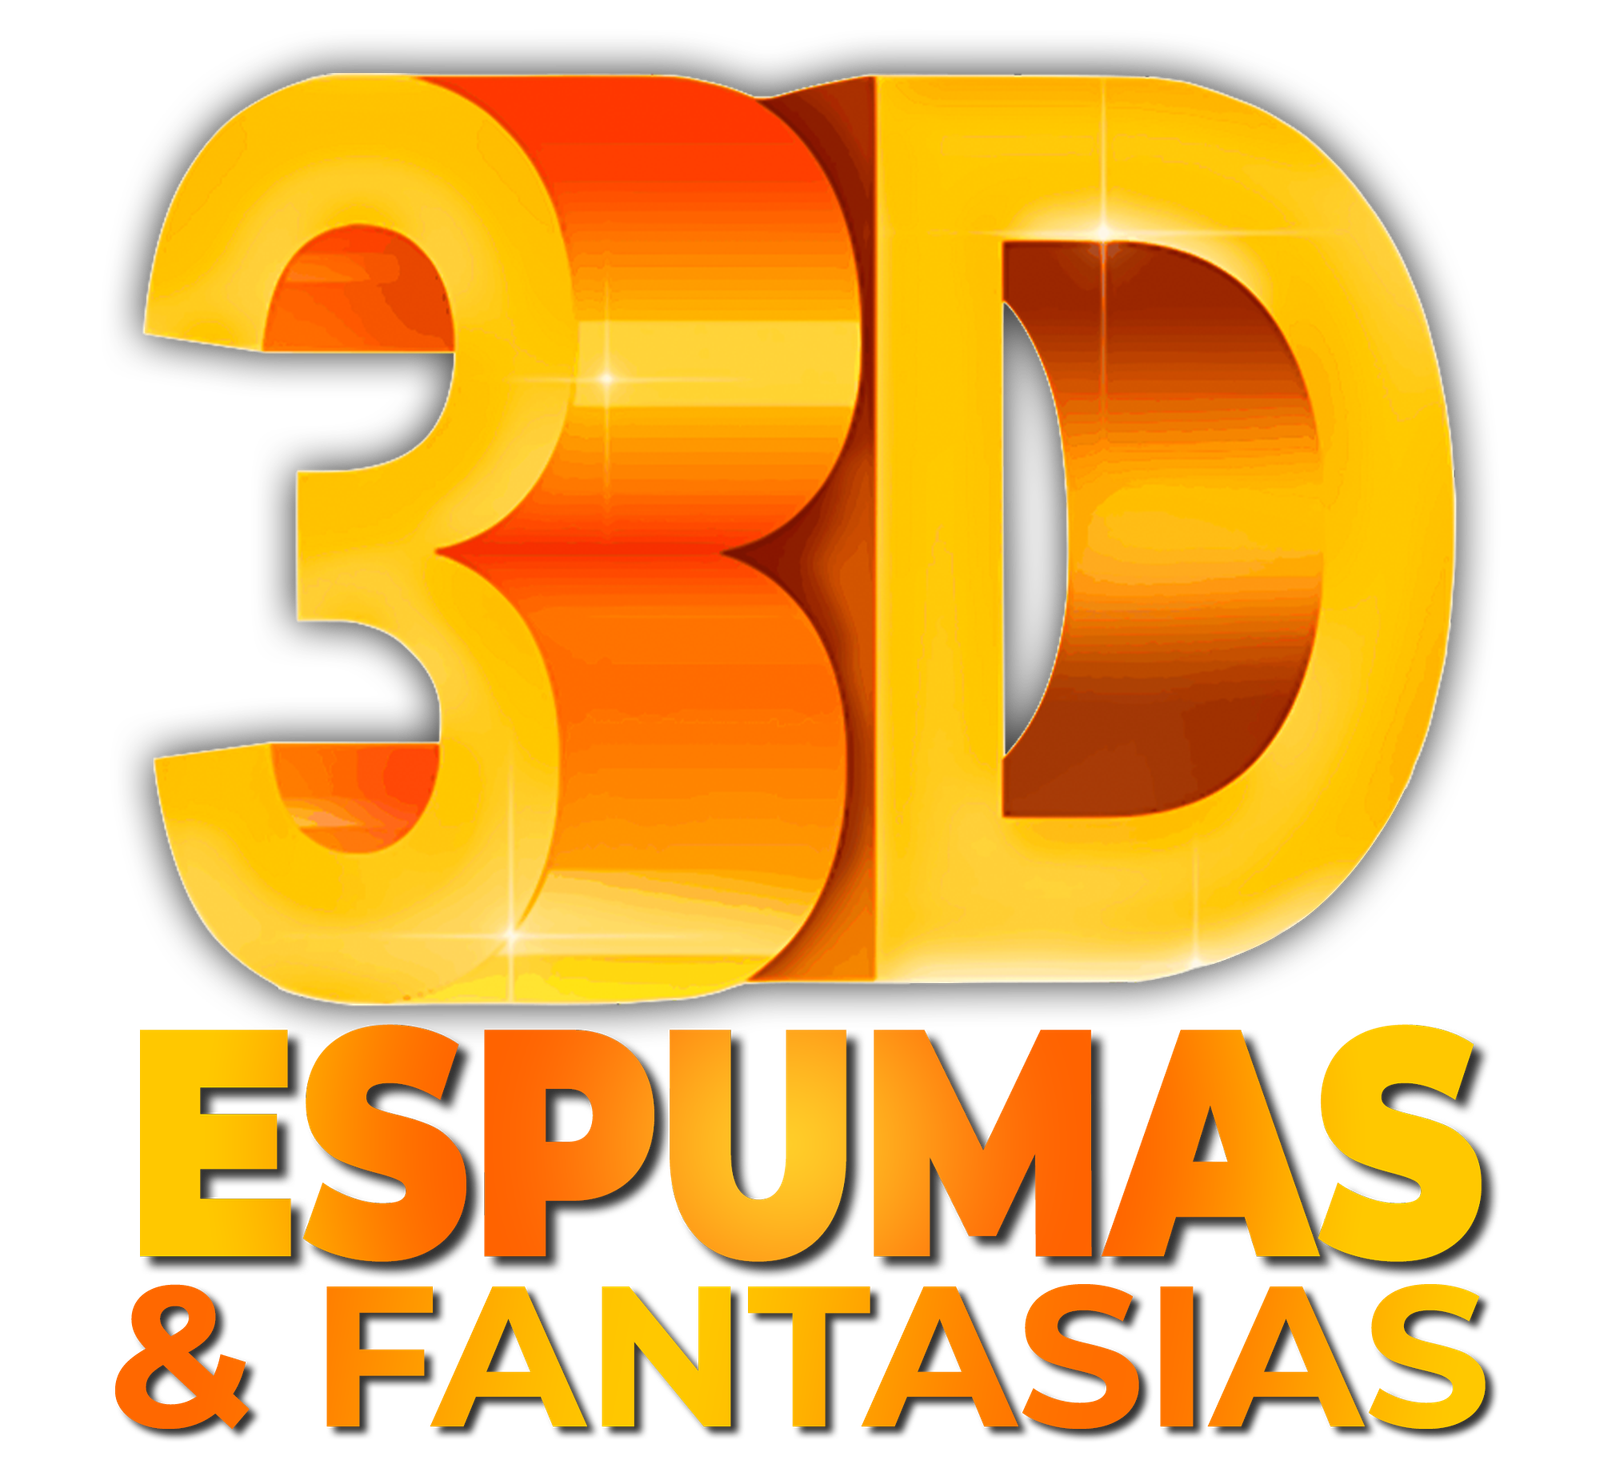 Fantasia Arlequina Paetê com Jaqueta – 3D Espumas